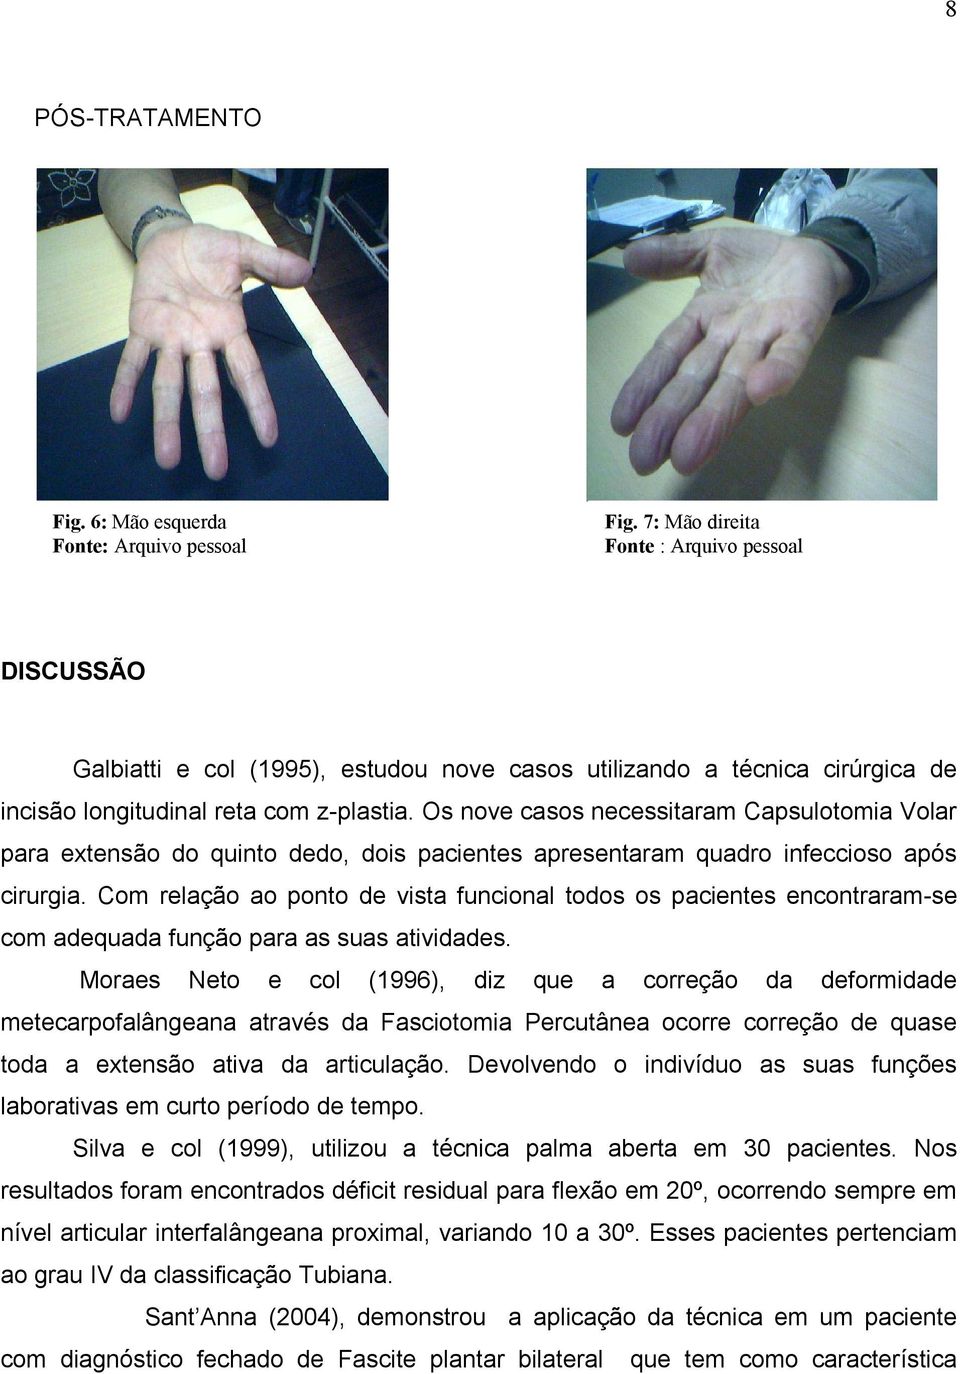 Os nove casos necessitaram Capsulotomia Volar para extensão do quinto dedo, dois pacientes apresentaram quadro infeccioso após cirurgia.